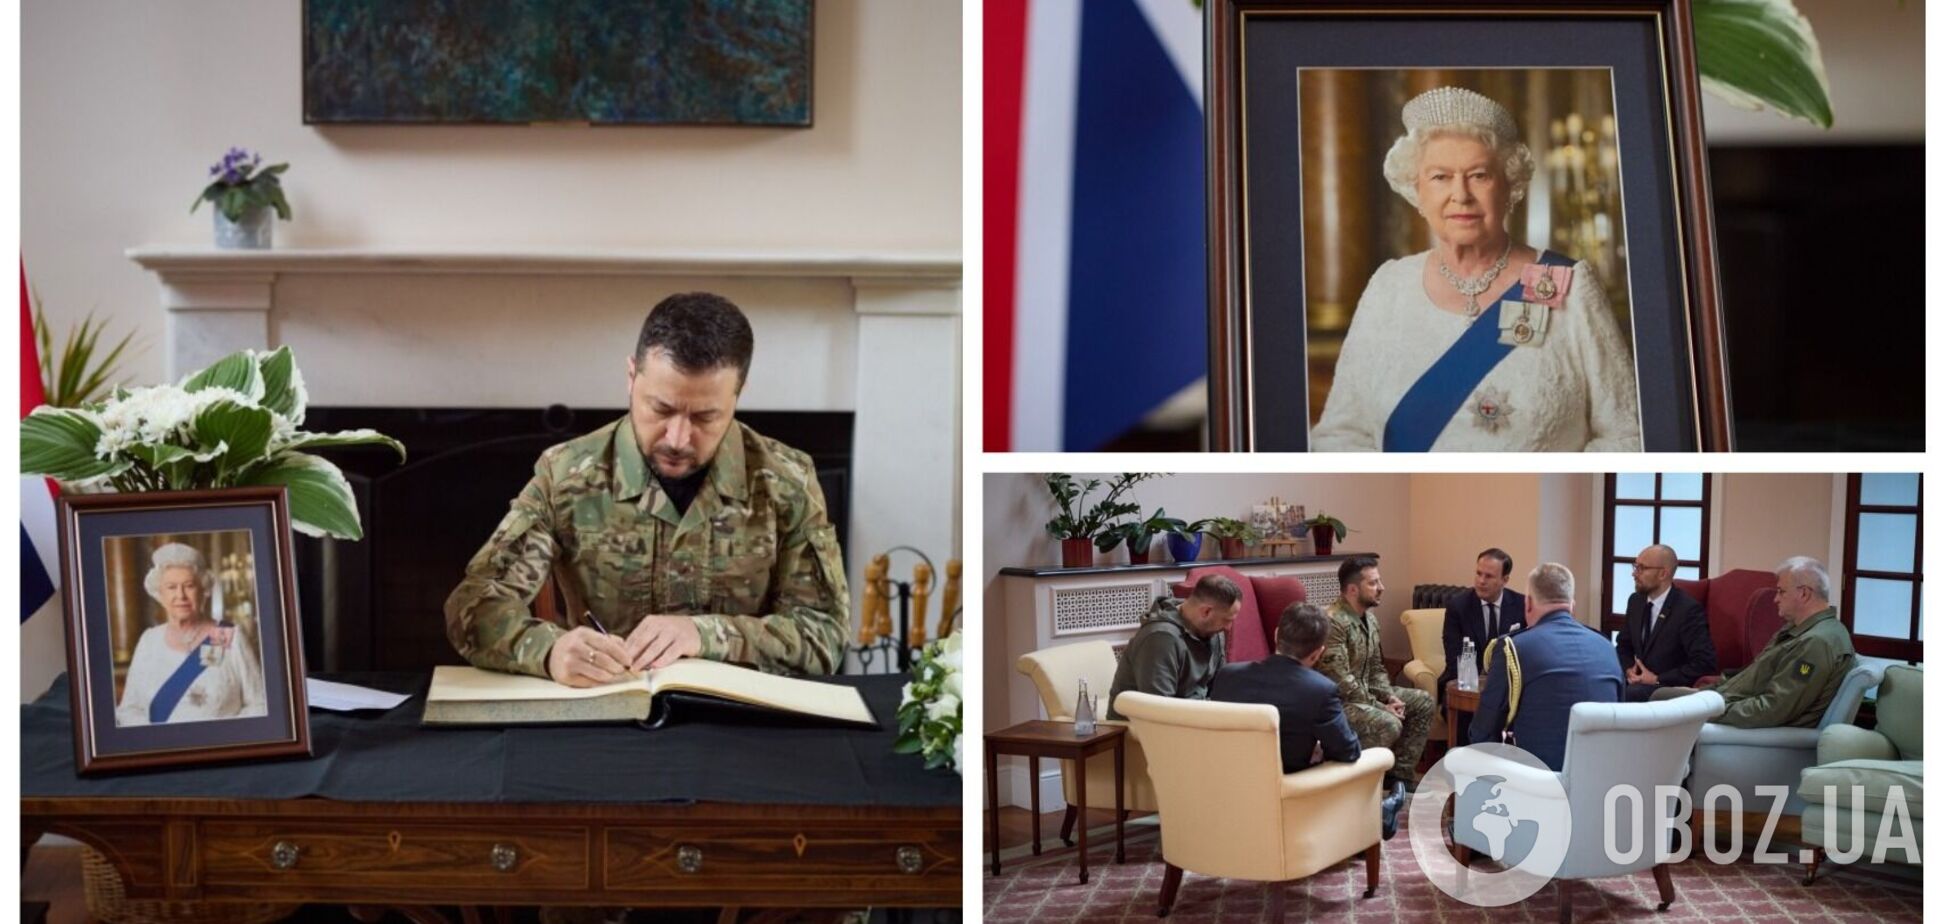 'Останется в истории человечества': Зеленский почтил память королевы Елизаветы II. Фото и видео